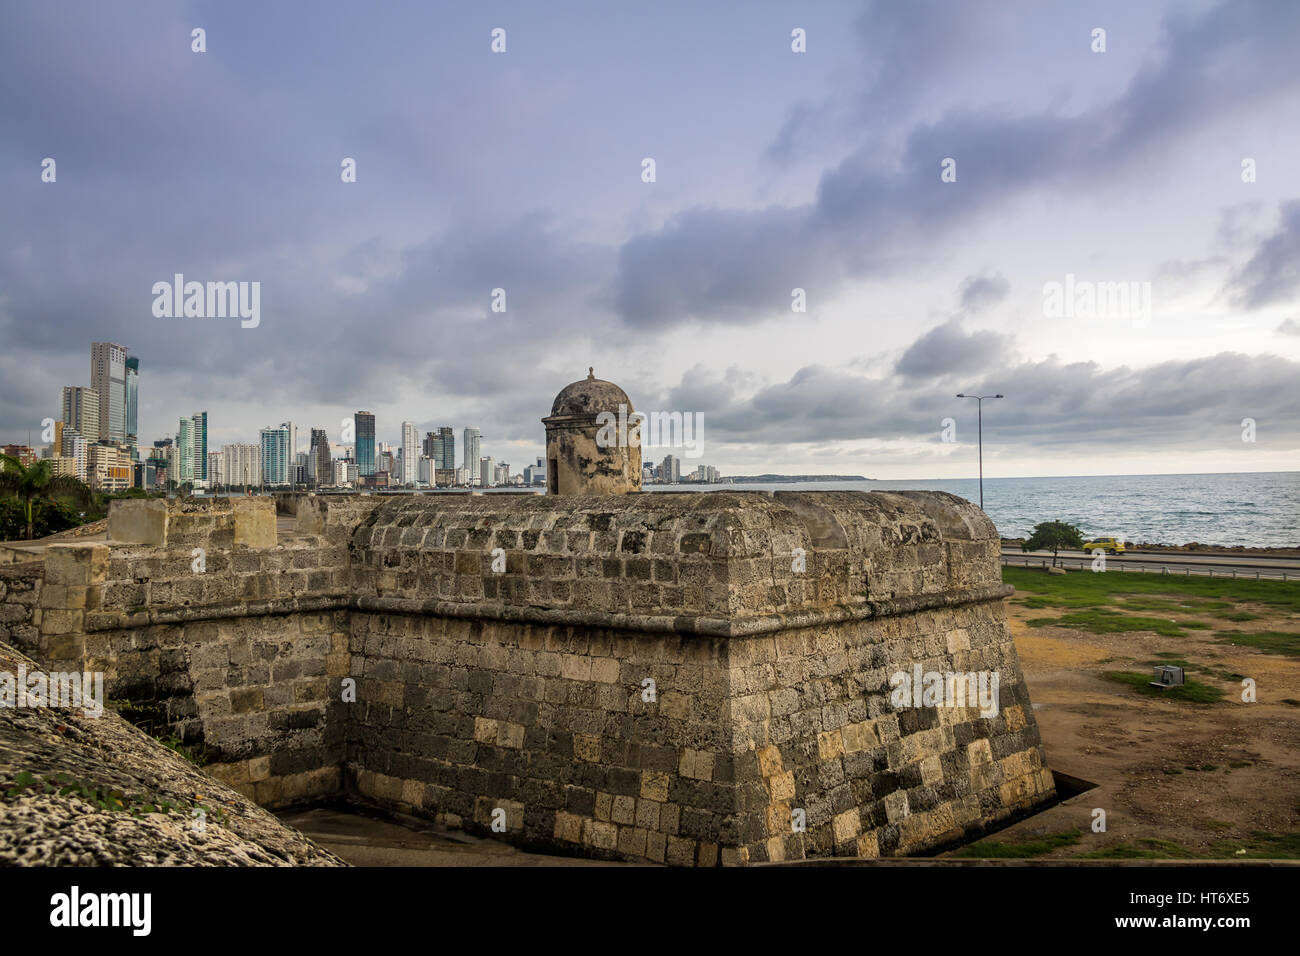 Le contraste de l'ancienne ville fortifiée et moderne Bocagrande skyline - Cartagena de Indias, Colombie Banque D'Images